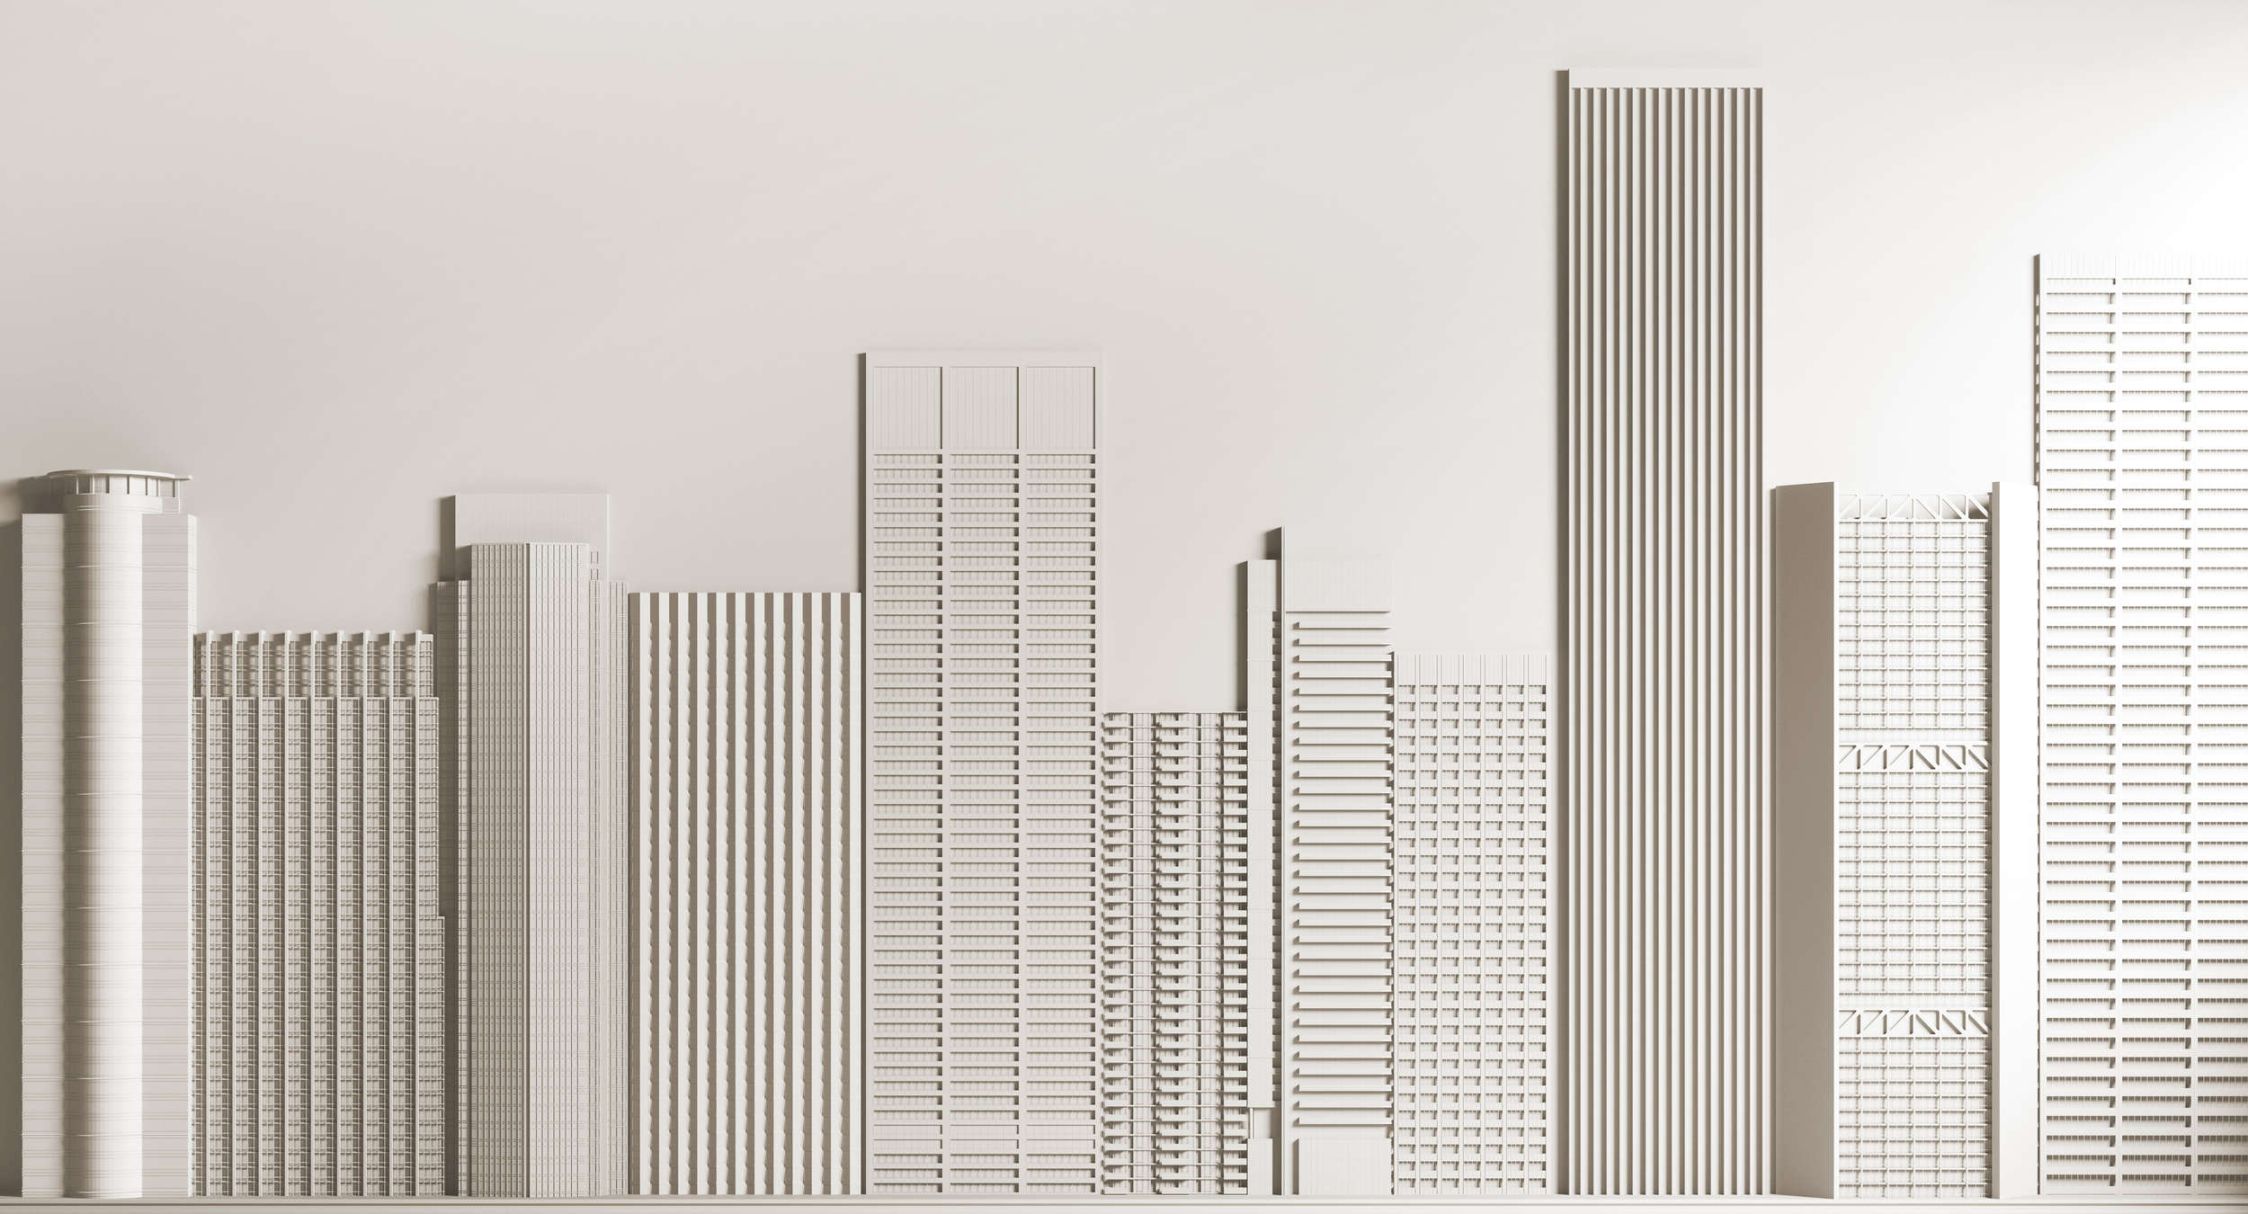             Fotomurali »new skyline« - Architettura con grattacieli - Materiali non tessuto premium liscio e leggermente lucido
        